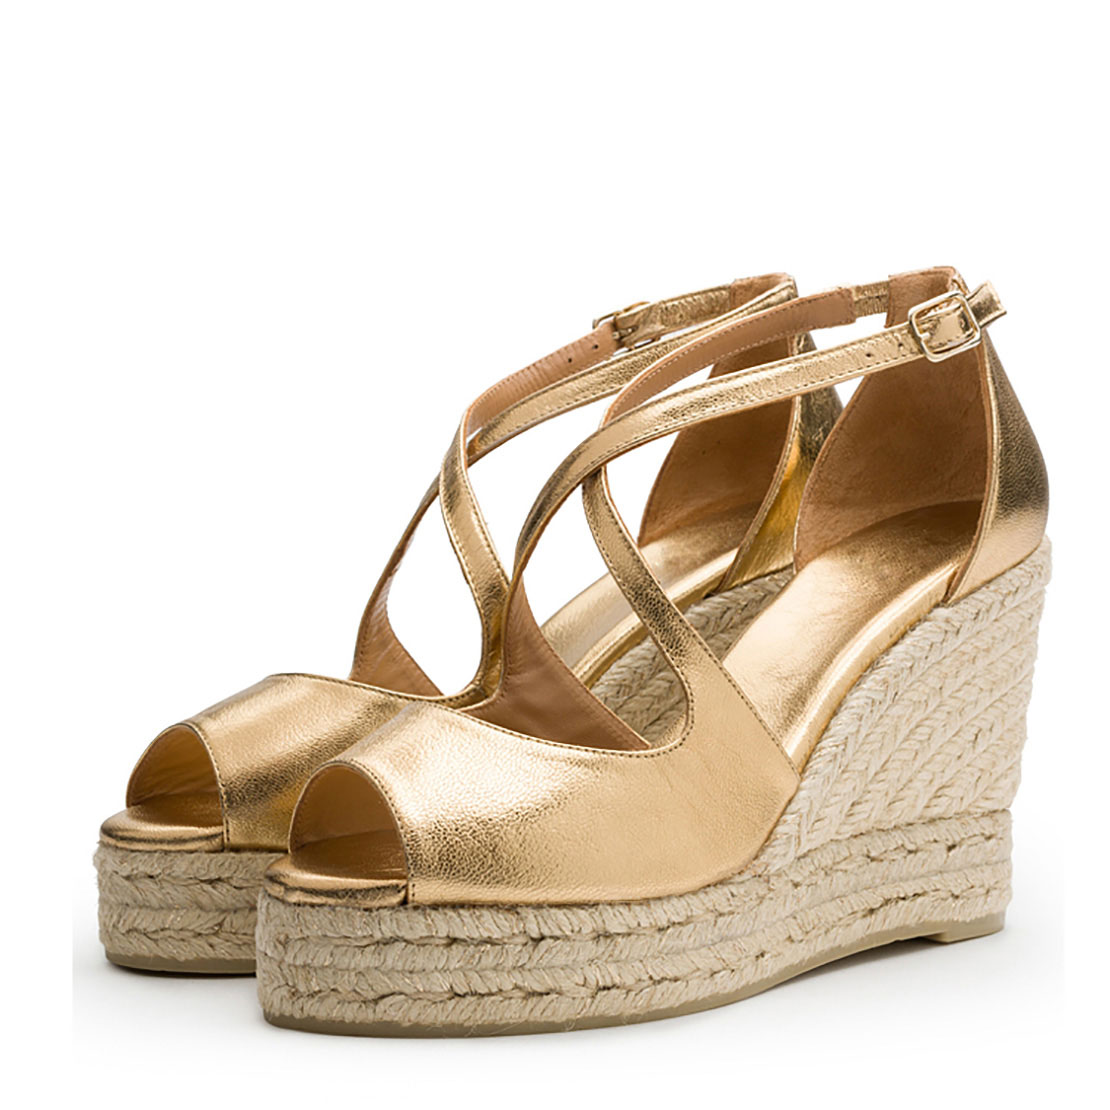 Gold leather peep toe wedge heels ladies sandal shoes YBS3025